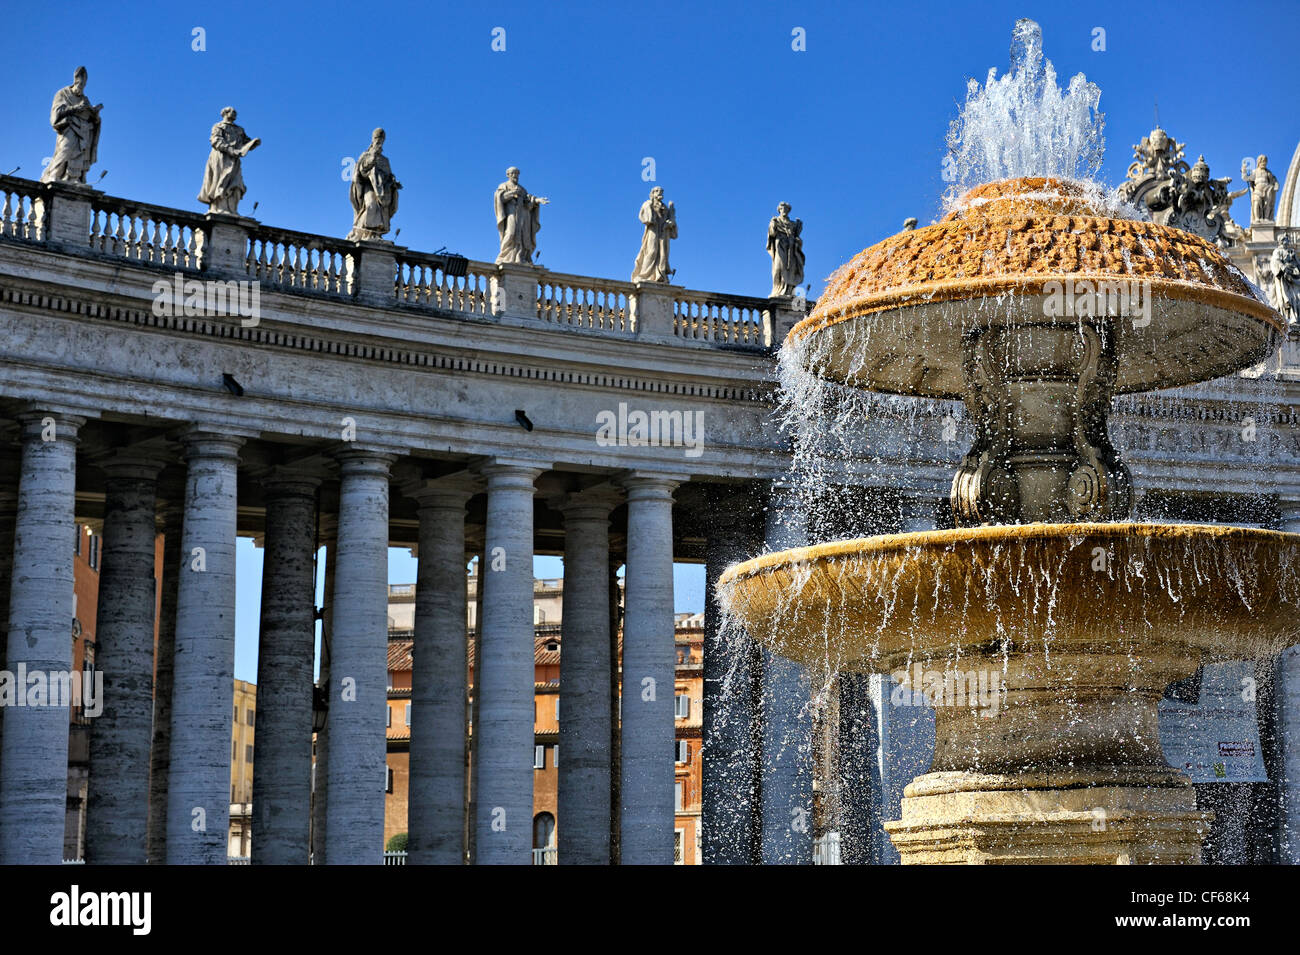 La plaza San Pedro, el Vaticano, Roma, Italia. Foto de stock